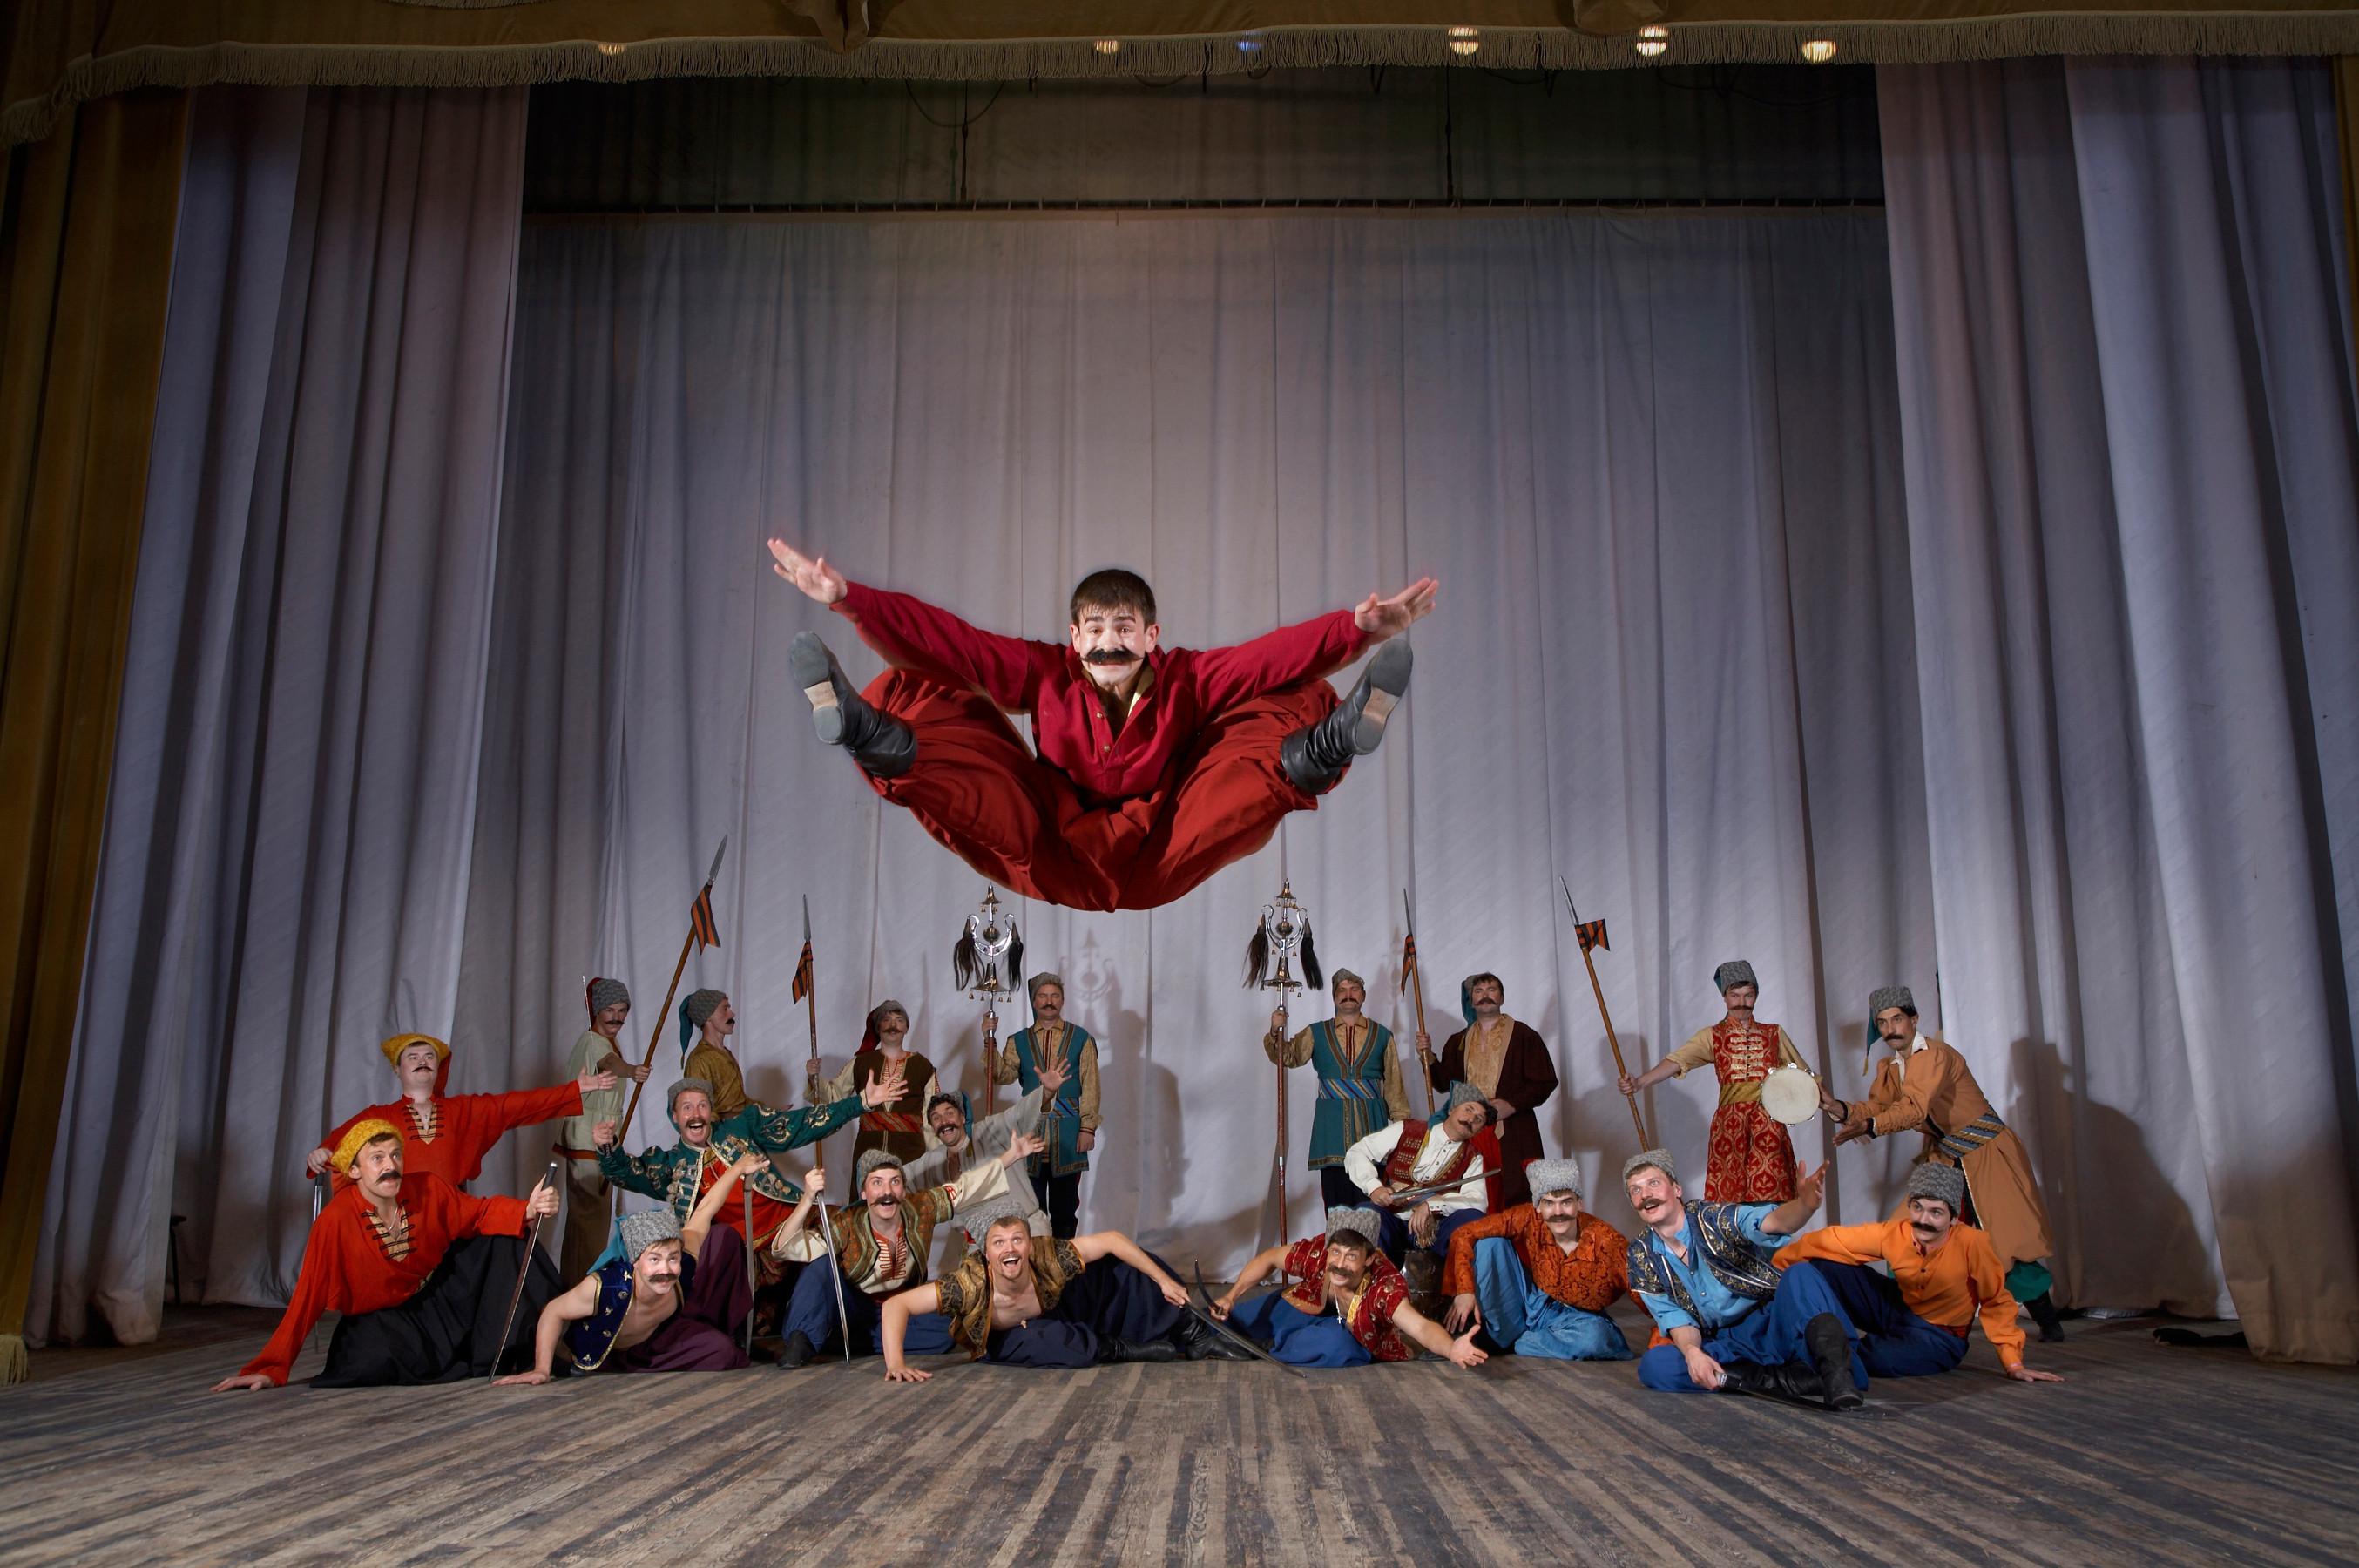 康樂及文化事務署五月下旬將呈獻兩場頓河哥薩克國立民族歌舞團的精湛演出。圖示頓河哥薩克國立民族歌舞團過往演出劇照。